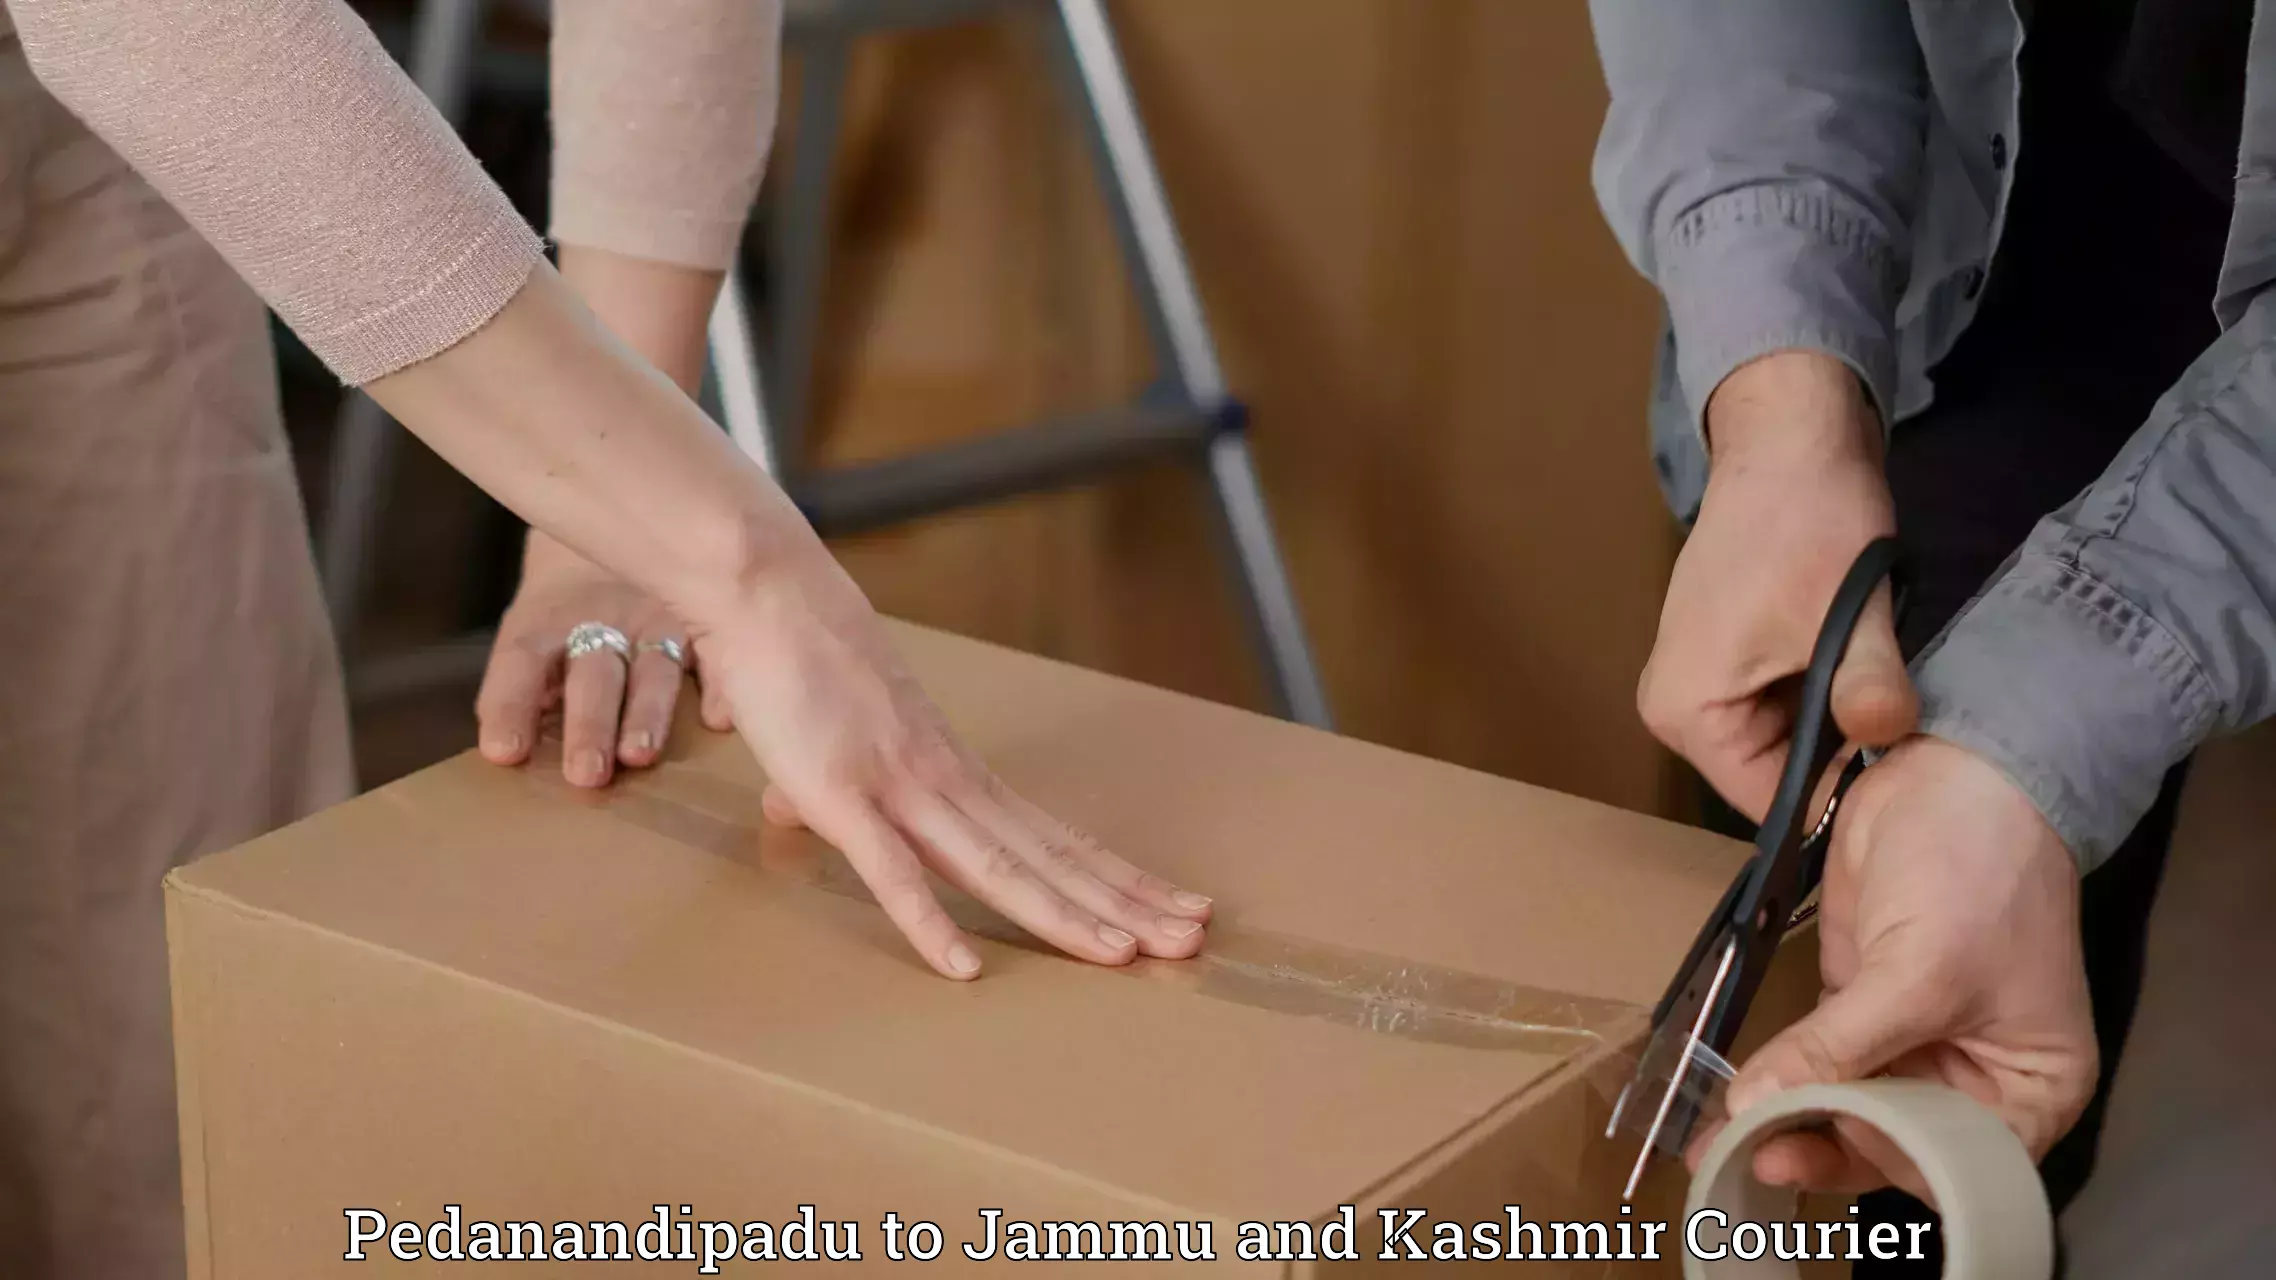 Versatile courier offerings Pedanandipadu to Srinagar Kashmir